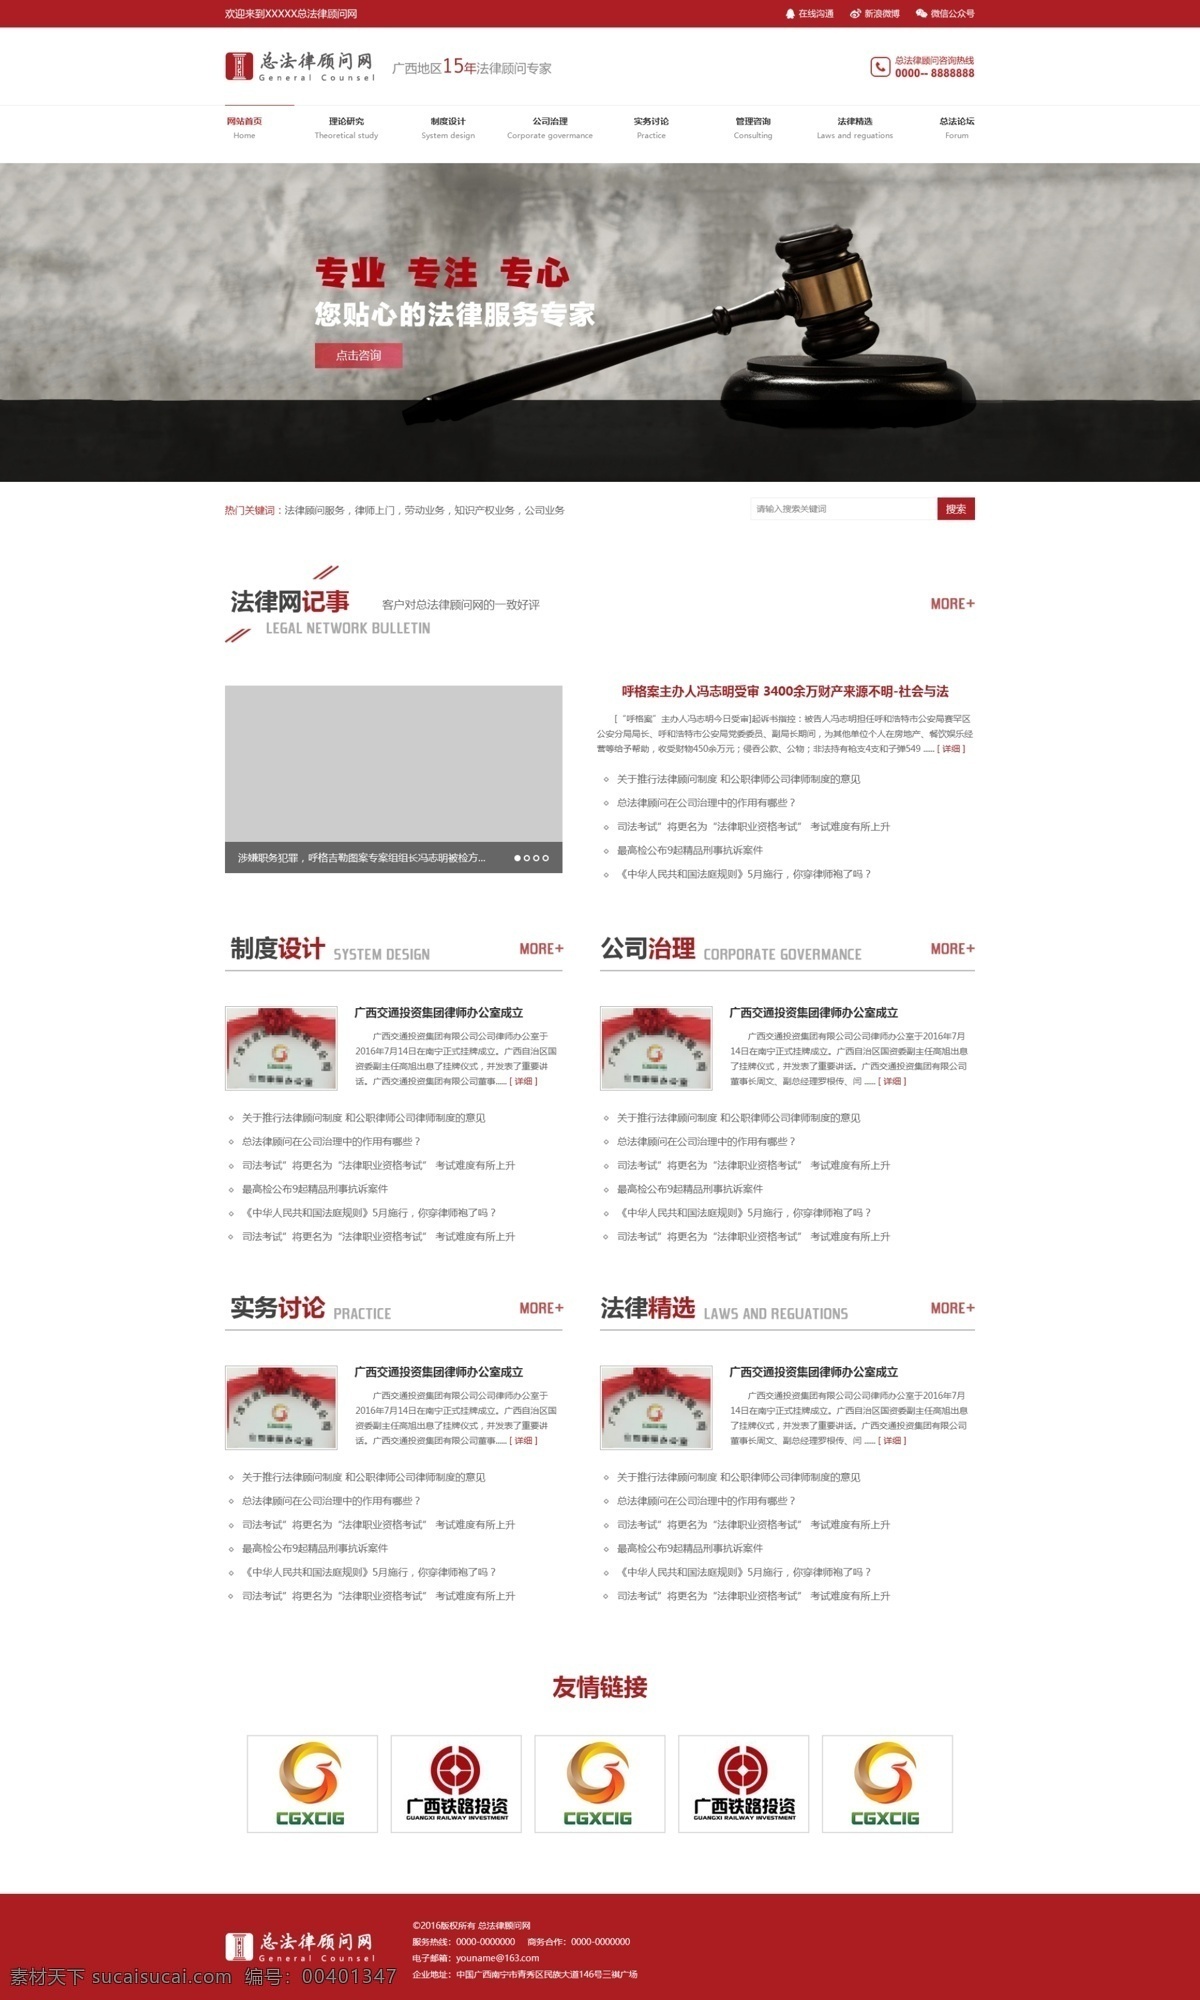 法律网站 网页设计 法律网 站网页设计 法律网站设计 法律网页设计 网页 律师网站设计 律师网页设计 ui web 界面设计 中文模板